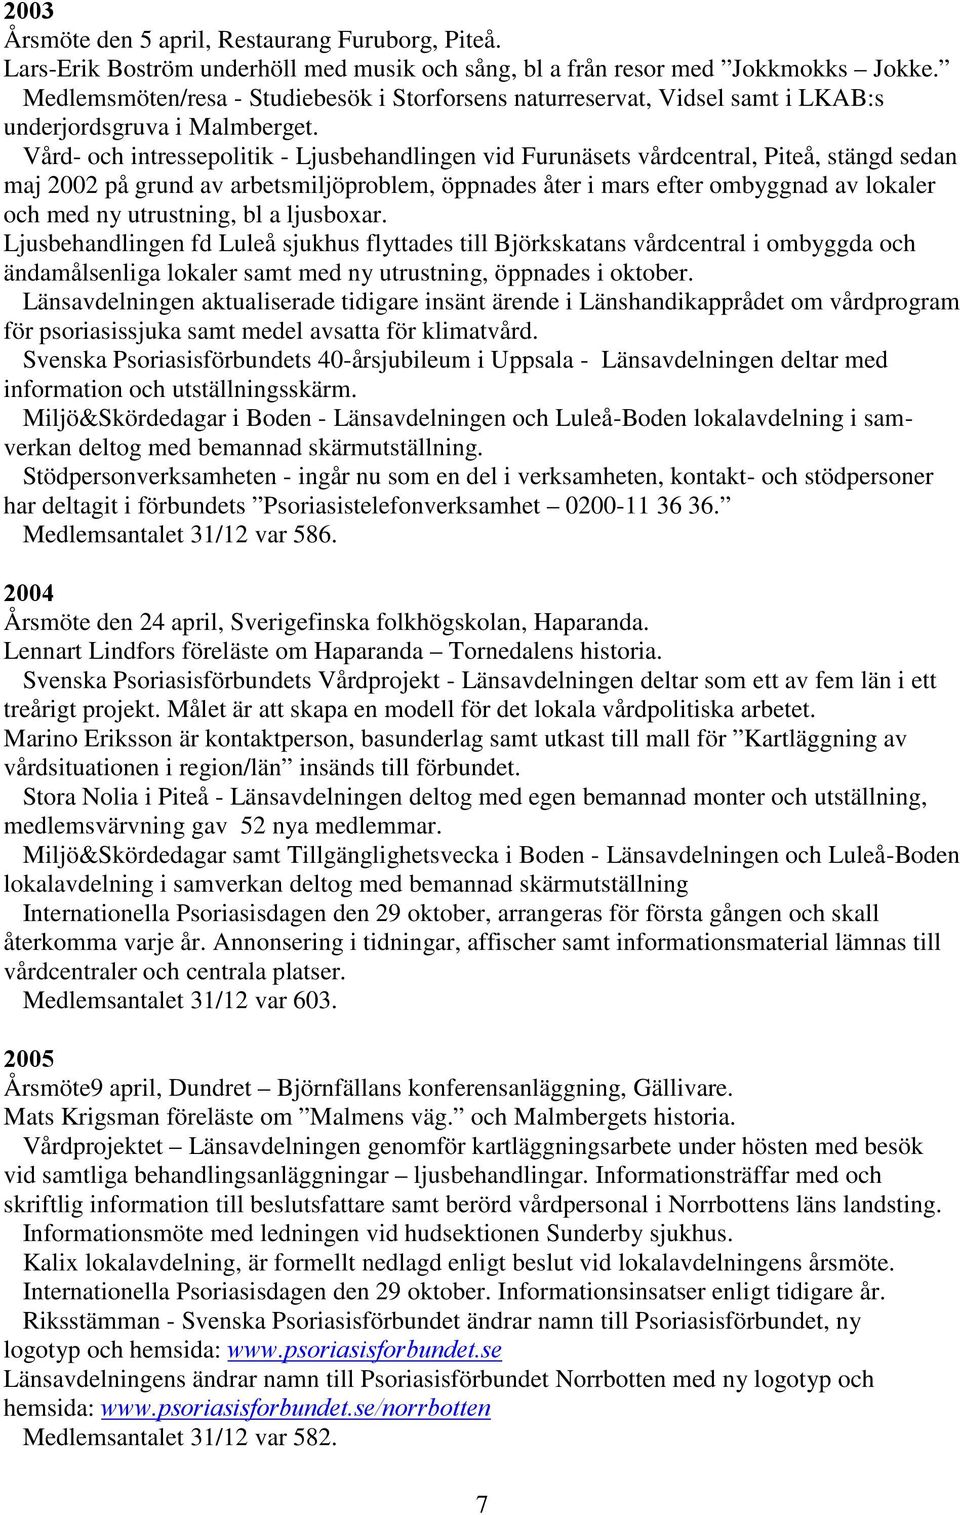 Vård- och intressepolitik - Ljusbehandlingen vid Furunäsets vårdcentral, Piteå, stängd sedan maj 2002 på grund av arbetsmiljöproblem, öppnades åter i mars efter ombyggnad av lokaler och med ny